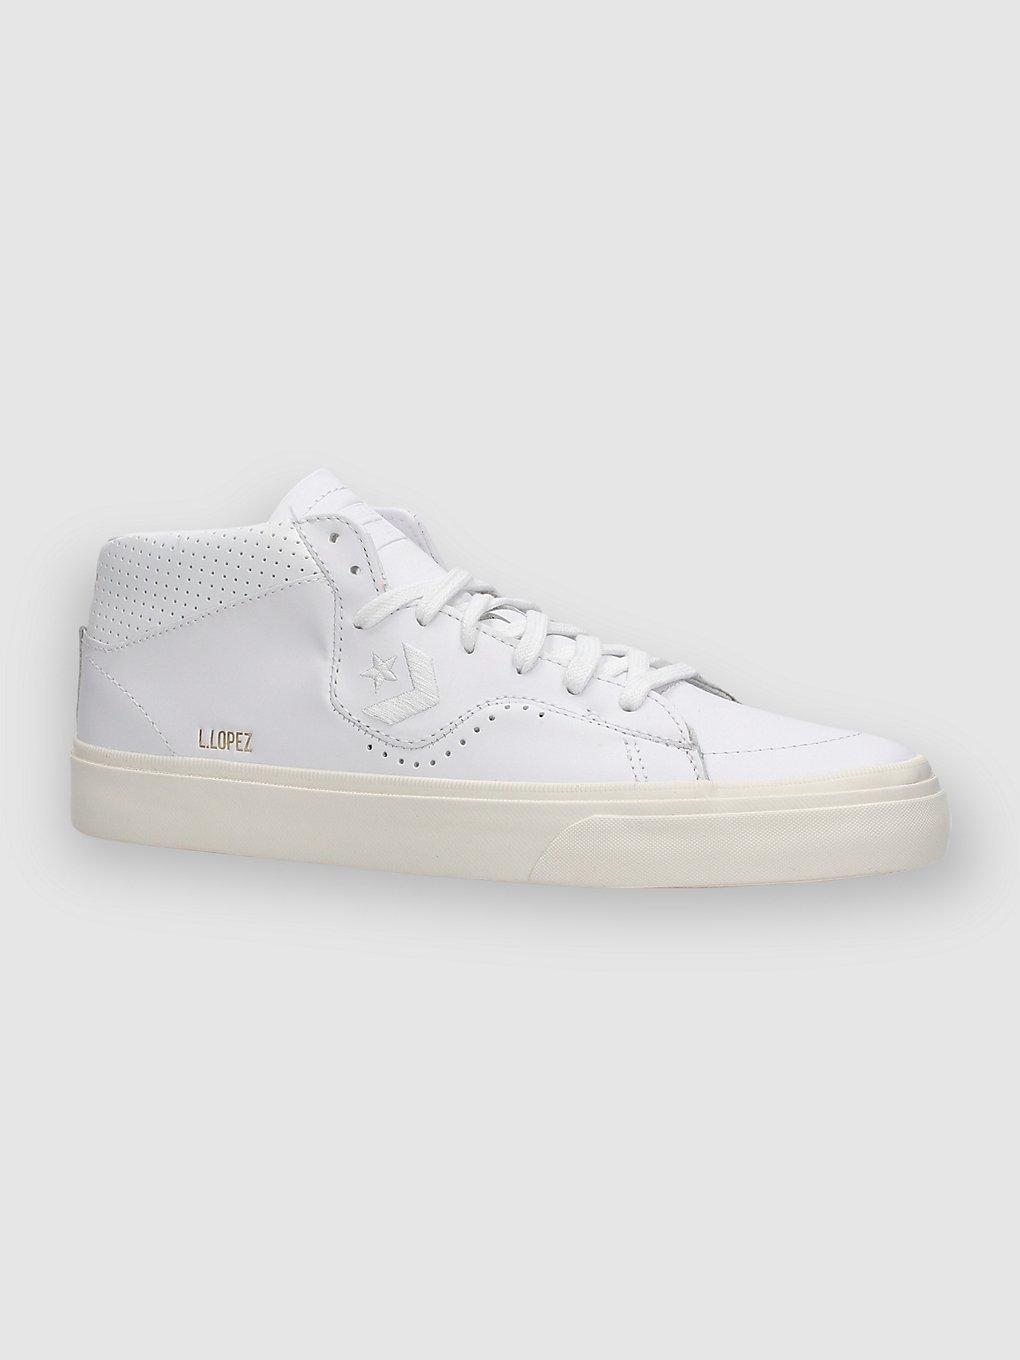 Converse Cons Louie Lopez Pro Mono Leather Chaussures de skate blanc